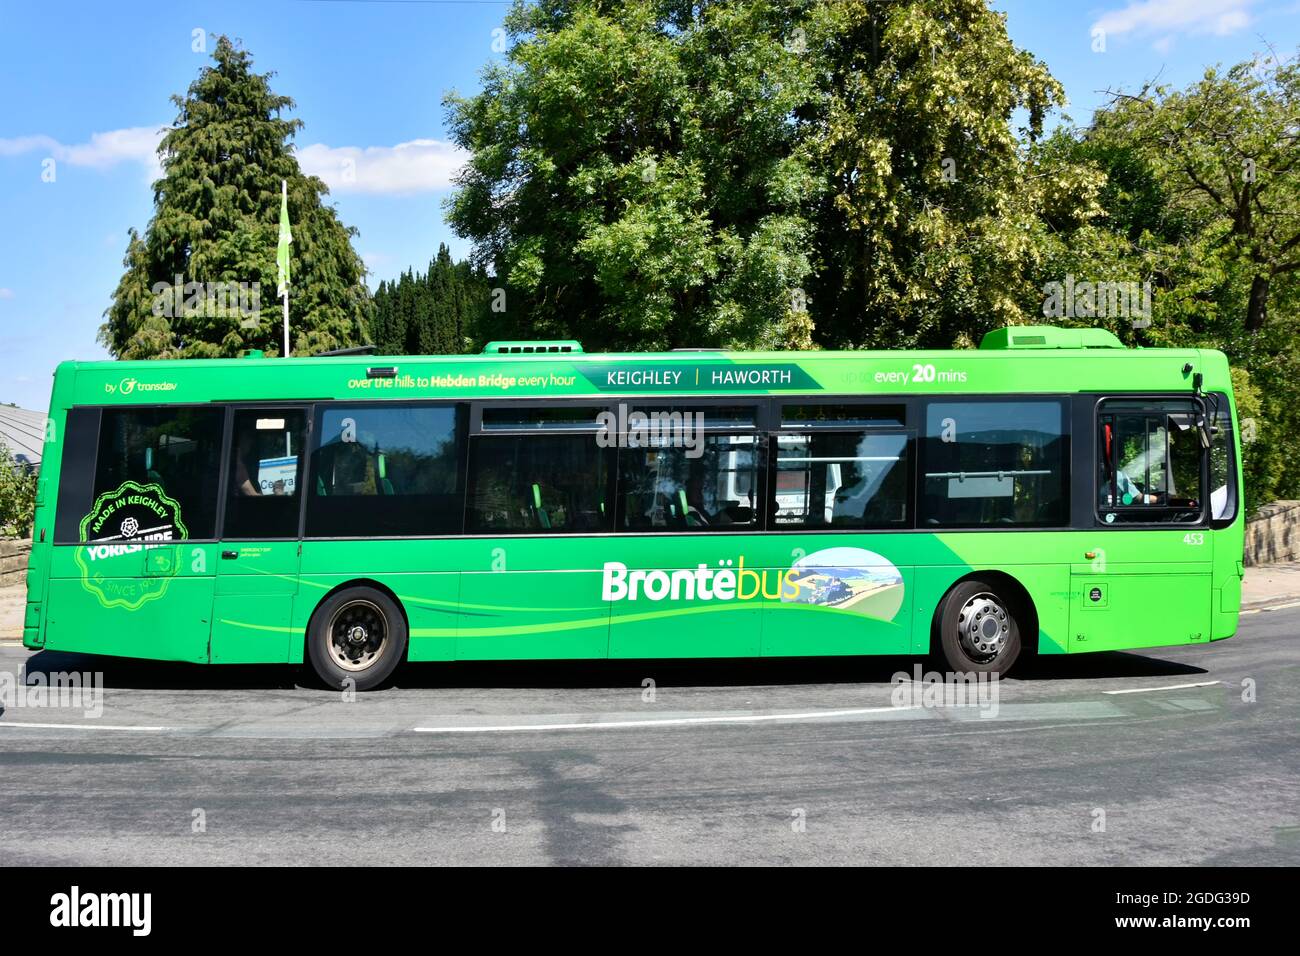 Vue latérale graphiques sur Green simple pont Bronte bus exploité par Transdev transport bas extrémité de main Street Hill dans Haworth West Yorkshire, Angleterre Royaume-Uni Banque D'Images